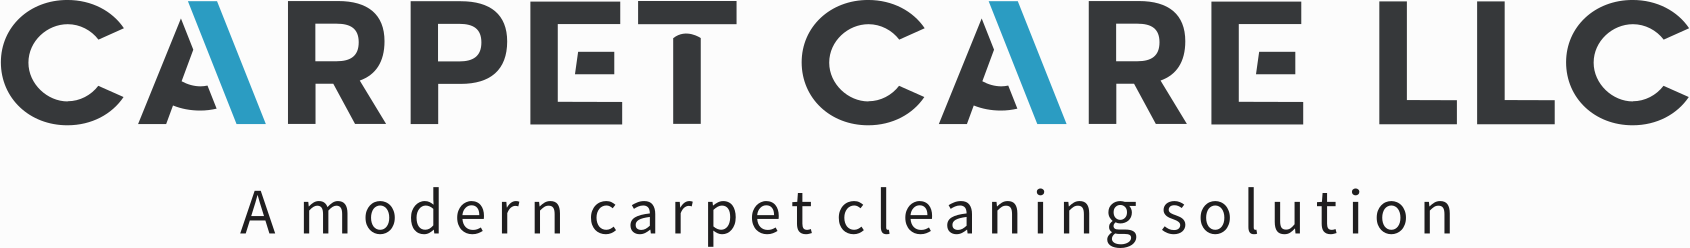 Carpet Care LLC